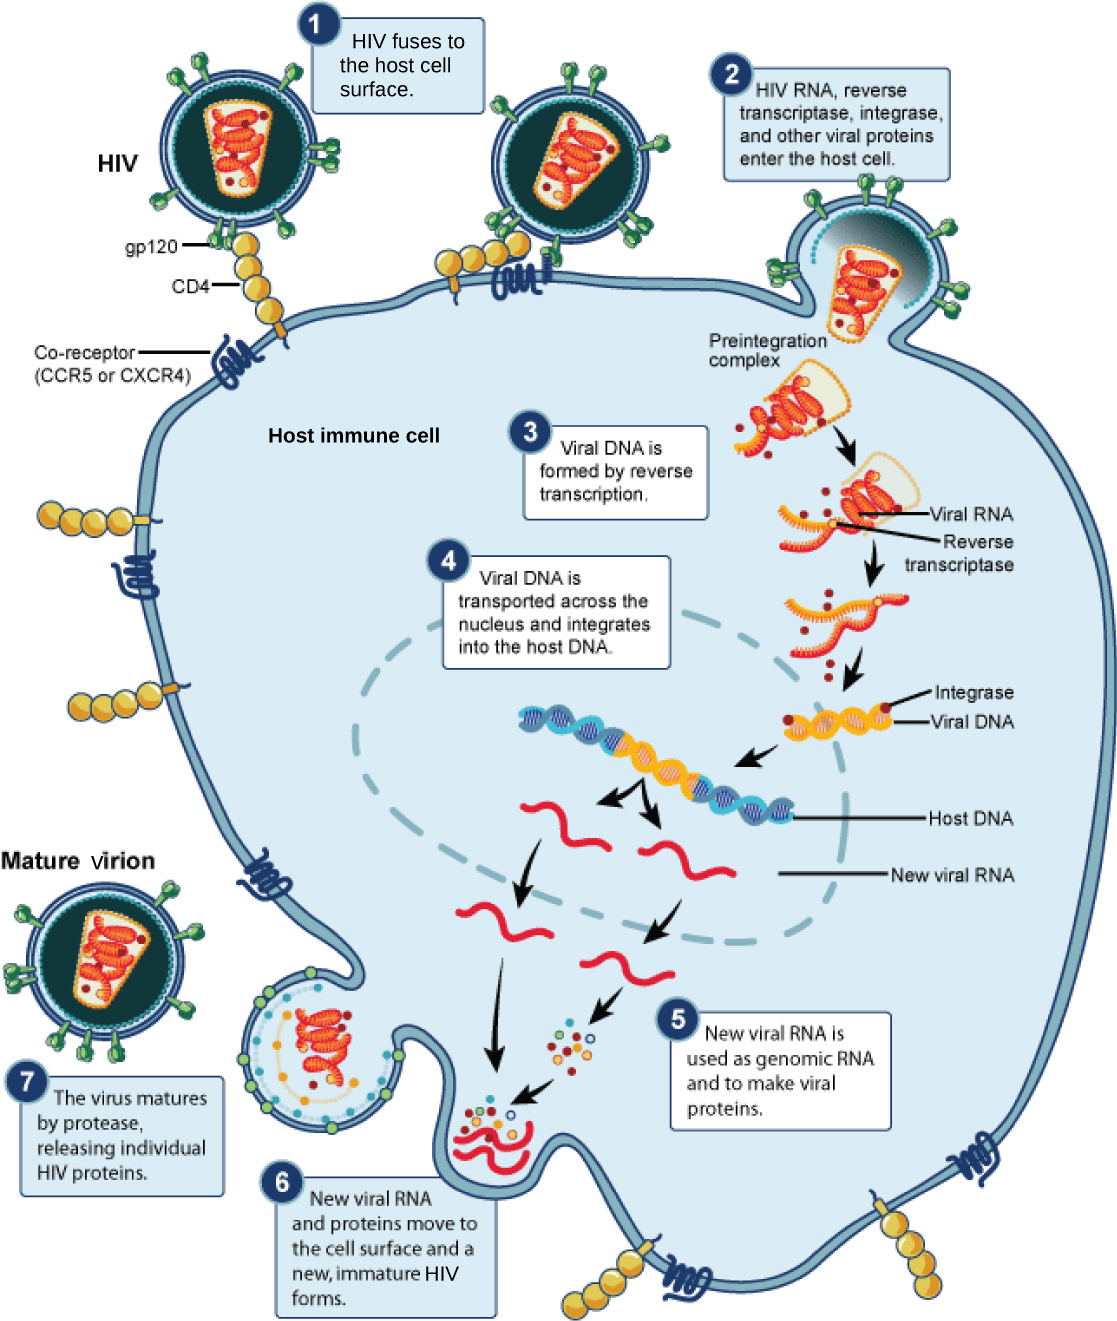 يوضح الرسم التوضيحي الخطوات في دورة حياة فيروس نقص المناعة البشرية. في الخطوة 1، تلتصق البروتينات السكرية gp120 الموجودة في الغلاف الفيروسي بمستقبلات CD4 على غشاء الخلية المضيفة. ثم تلتصق البروتينات السكرية بمستقبلات مشتركة، CCR5 أو CXCR4، ويندمج الغلاف الفيروسي مع غشاء الخلية. يتم إطلاق الحمض النووي الريبي لفيروس نقص المناعة البشرية والنسخ العكسي والبروتينات الفيروسية الأخرى في الخلية المضيفة. يتكون الحمض النووي الفيروسي من الحمض النووي الريبي عن طريق النسخ العكسي. ثم يتم نقل الحمض النووي الفيروسي عبر الغشاء النووي، حيث يندمج في الحمض النووي المضيف. يتم تصنيع الحمض النووي الريبي الفيروسي الجديد؛ يتم استخدامه كرنا جيني جيني ولصنع بروتينات فيروسية. ينتقل الحمض النووي الريبي الفيروسي الجديد والبروتينات إلى سطح الخلية ويتشكل فيروس نقص المناعة البشرية الجديد غير الناضج. ينضج الفيروس عندما يطلق البروتياز بروتينات فيروس نقص المناعة البشرية الفردية.